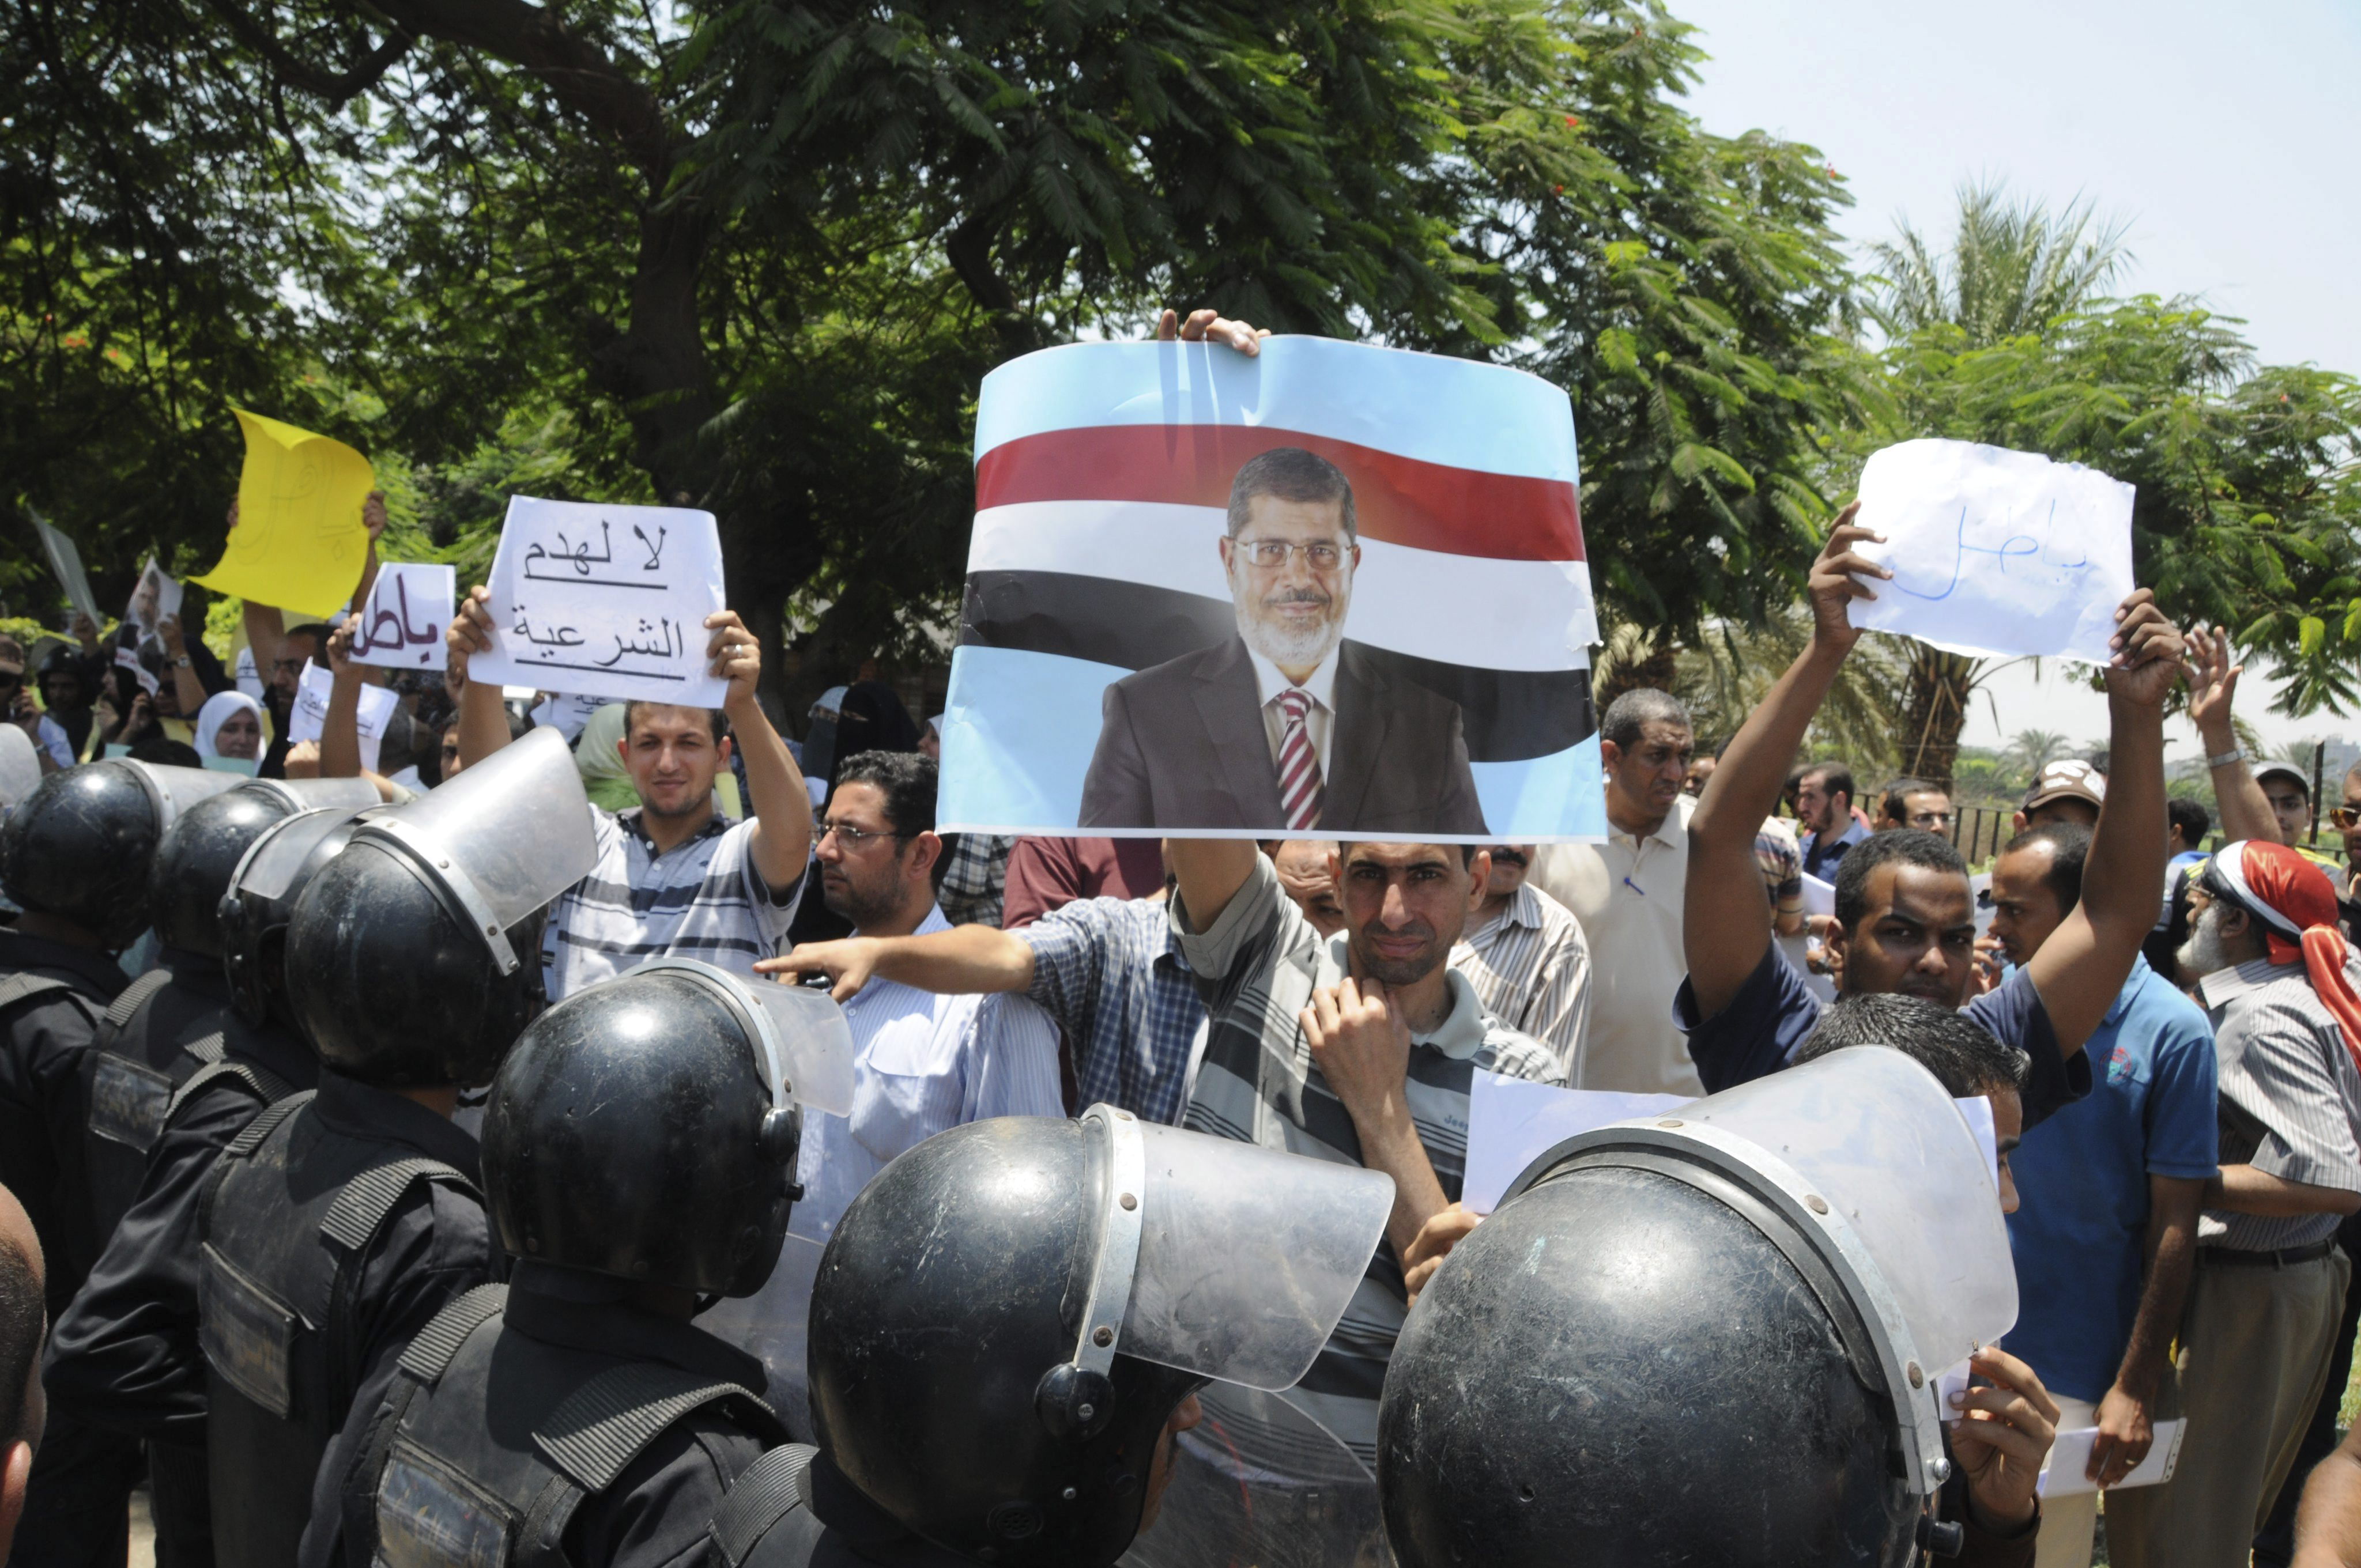 El mundo, inquieto por la democracia en Egipto, evita hablar de golpe militar